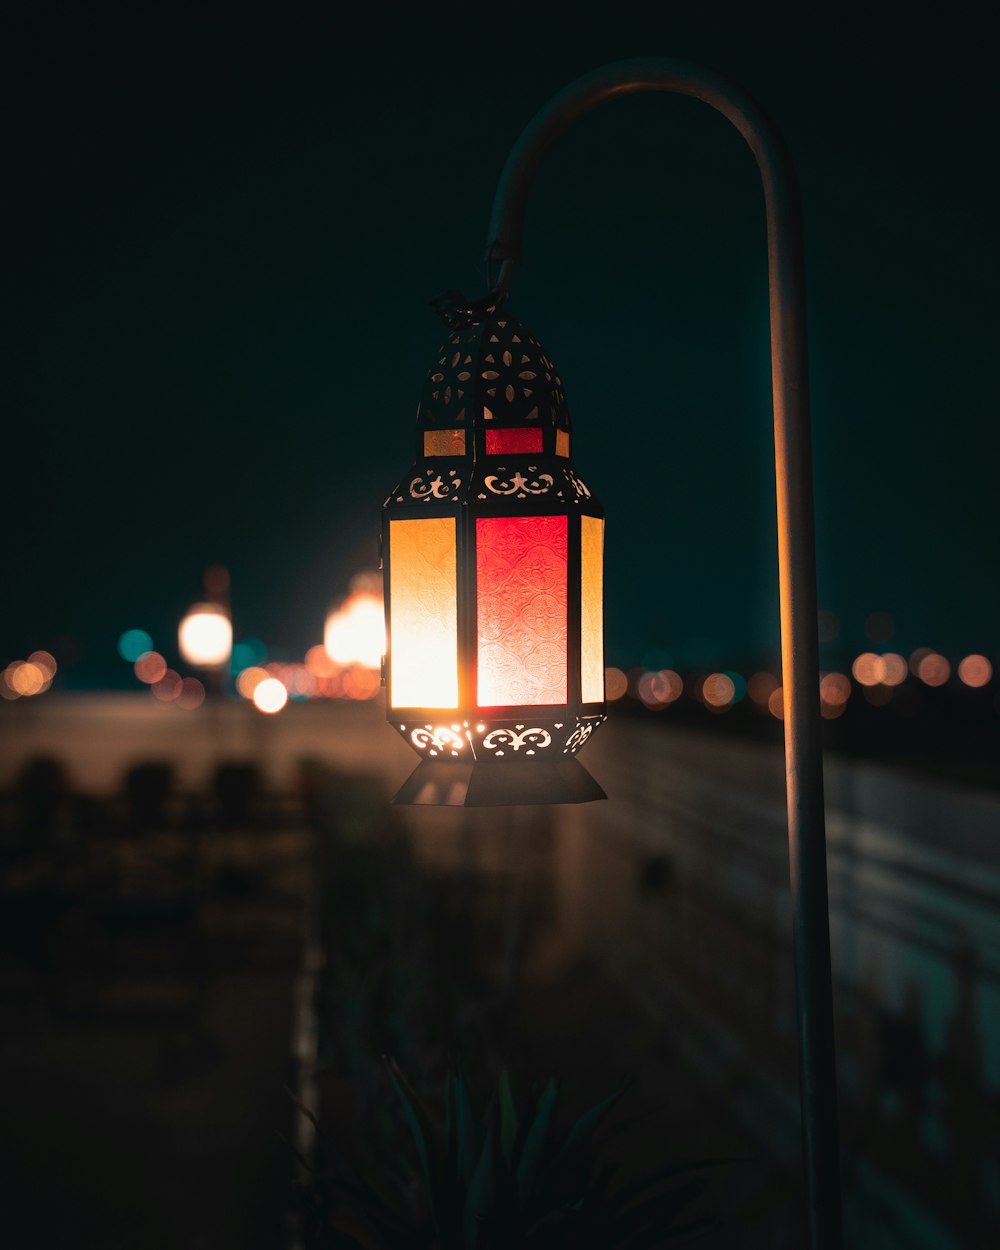 Chiếc đèn lồng đen và cam cực kỳ bắt mắt và ấn tượng, đây là lựa chọn hoàn hảo để thể hiện sự nghiêm túc và trang trọng của Ramadan. Hình ảnh liên quan đến đèn lồng này sẽ giúp bạn khám phá vẻ đẹp hoàn mỹ và sự cân bằng giữa sự tối và sáng, và giúp bạn hòa mình vào không khí thánh thiện của Ramadan.